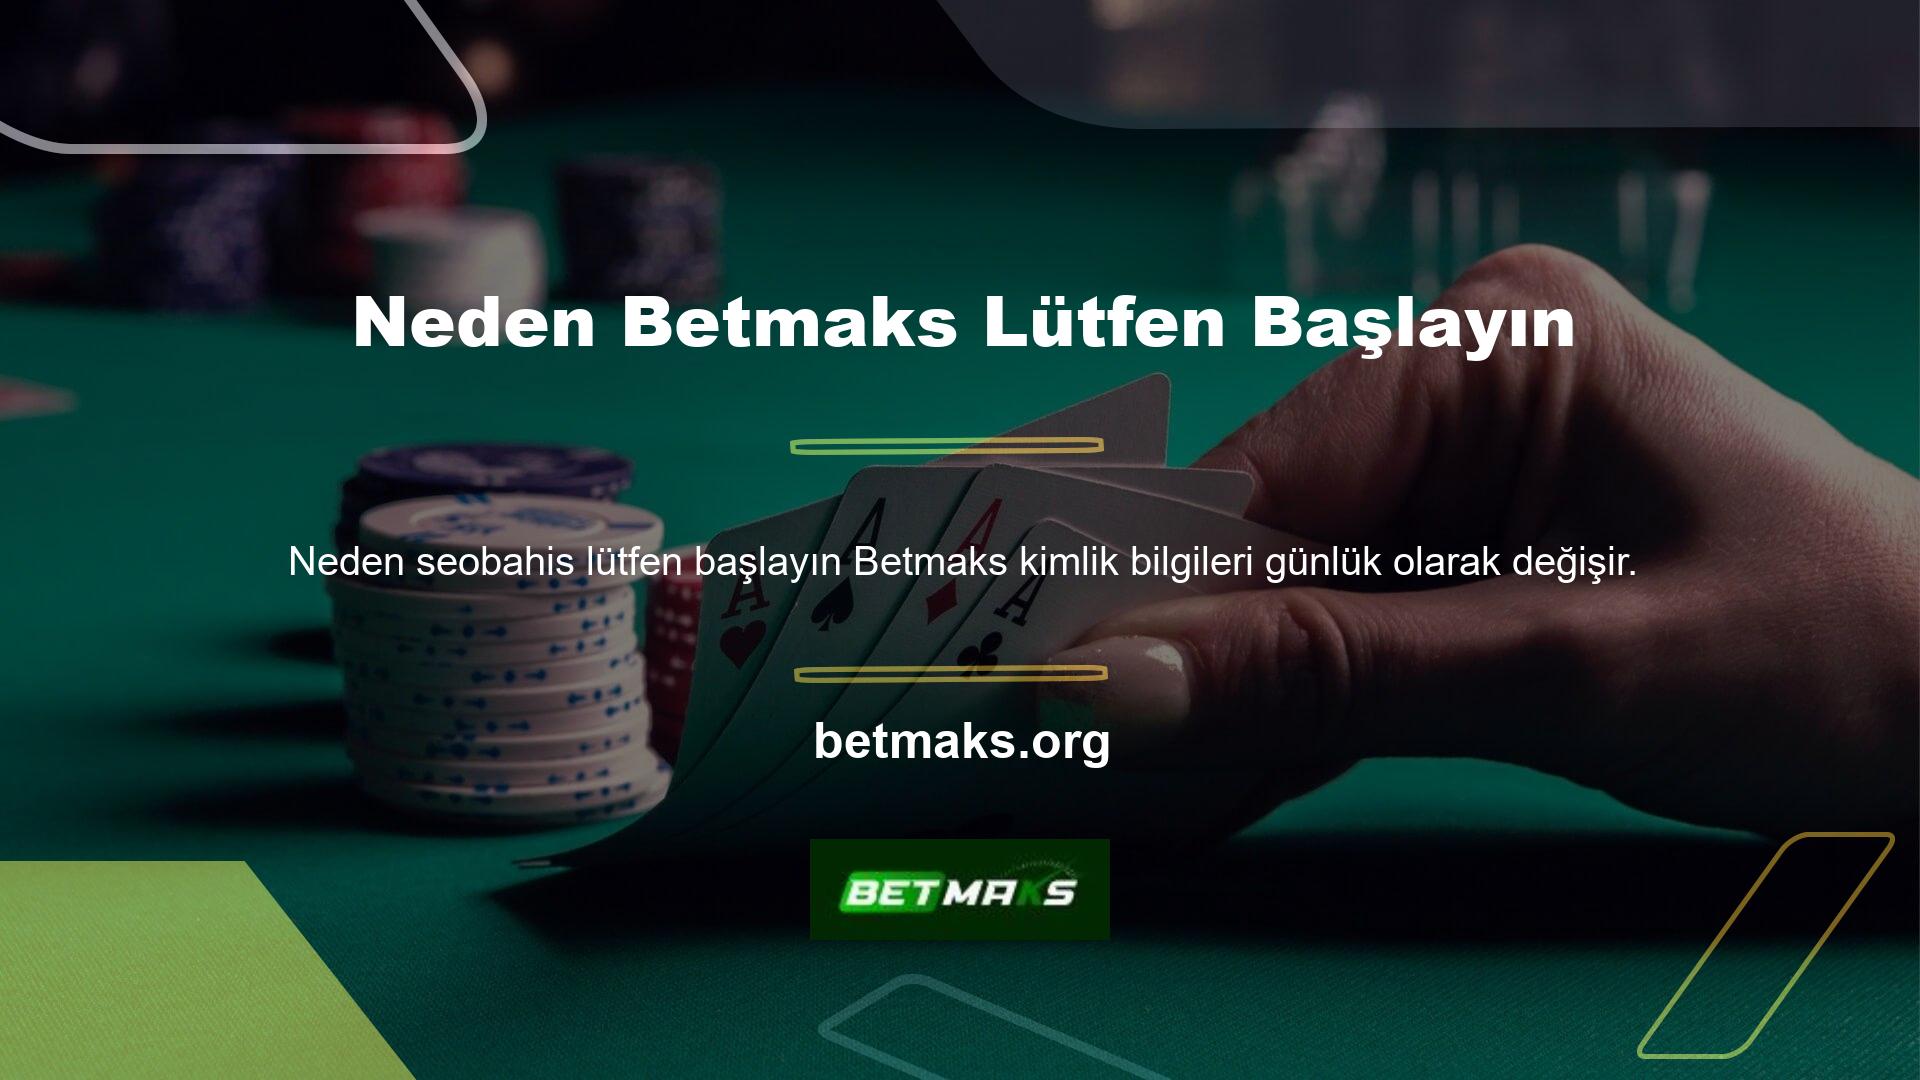 Betmaks günlük premium hizmetinin ana nedenlerinden biri şüphesiz Türkiye'de çevrimiçi casino yasağıdır